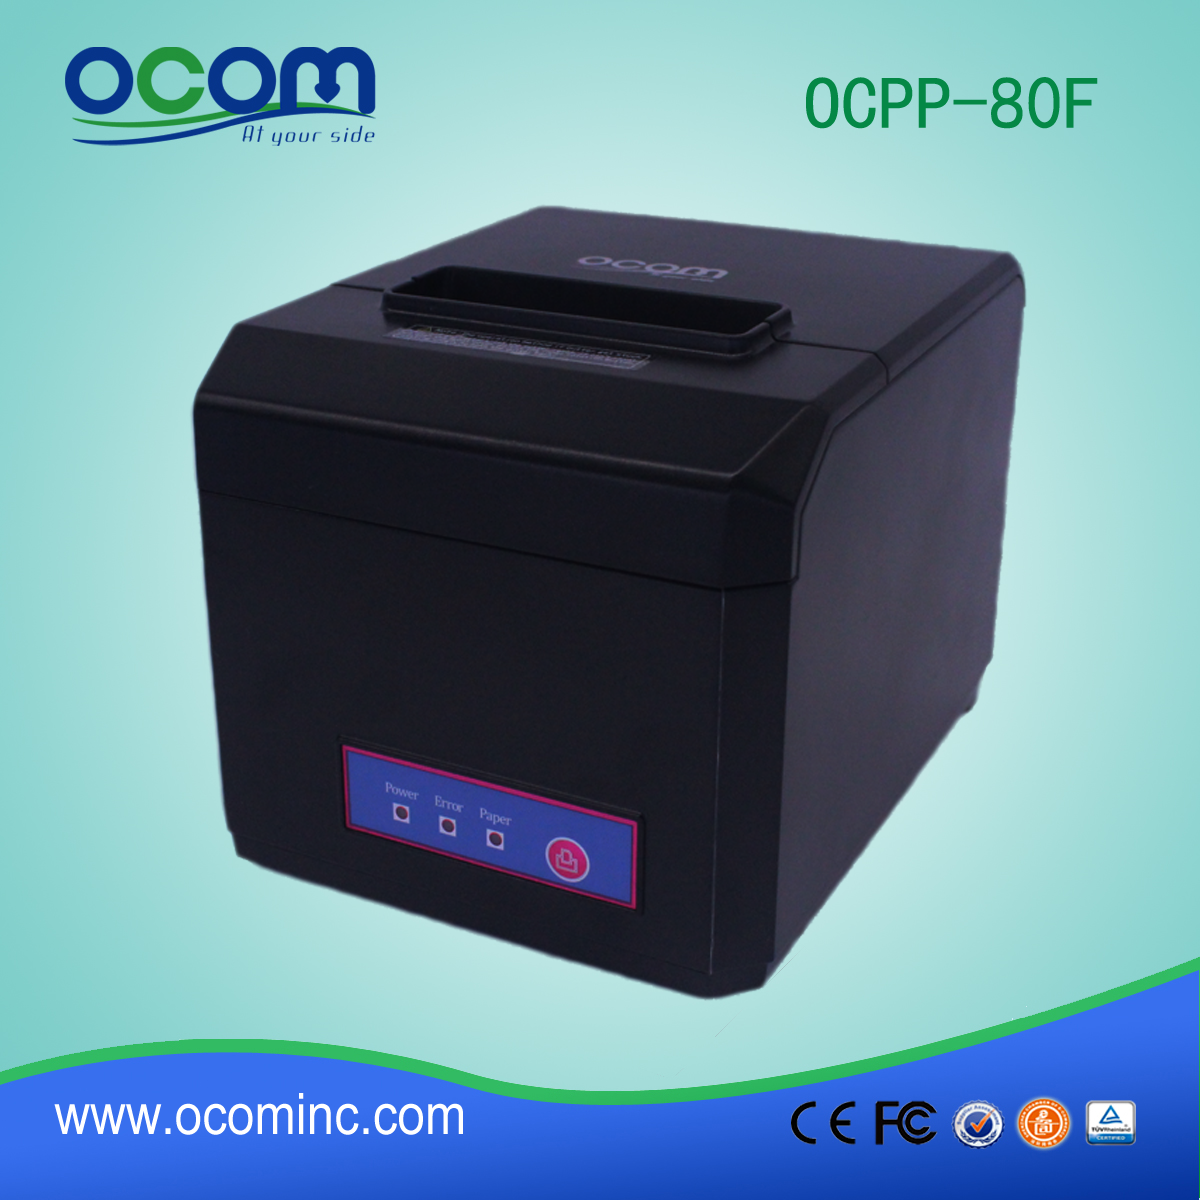 OCPP-80F: Cheap 3 pouces POS Bluetooth imprimante de réception thermique pour Andriod ou iOS